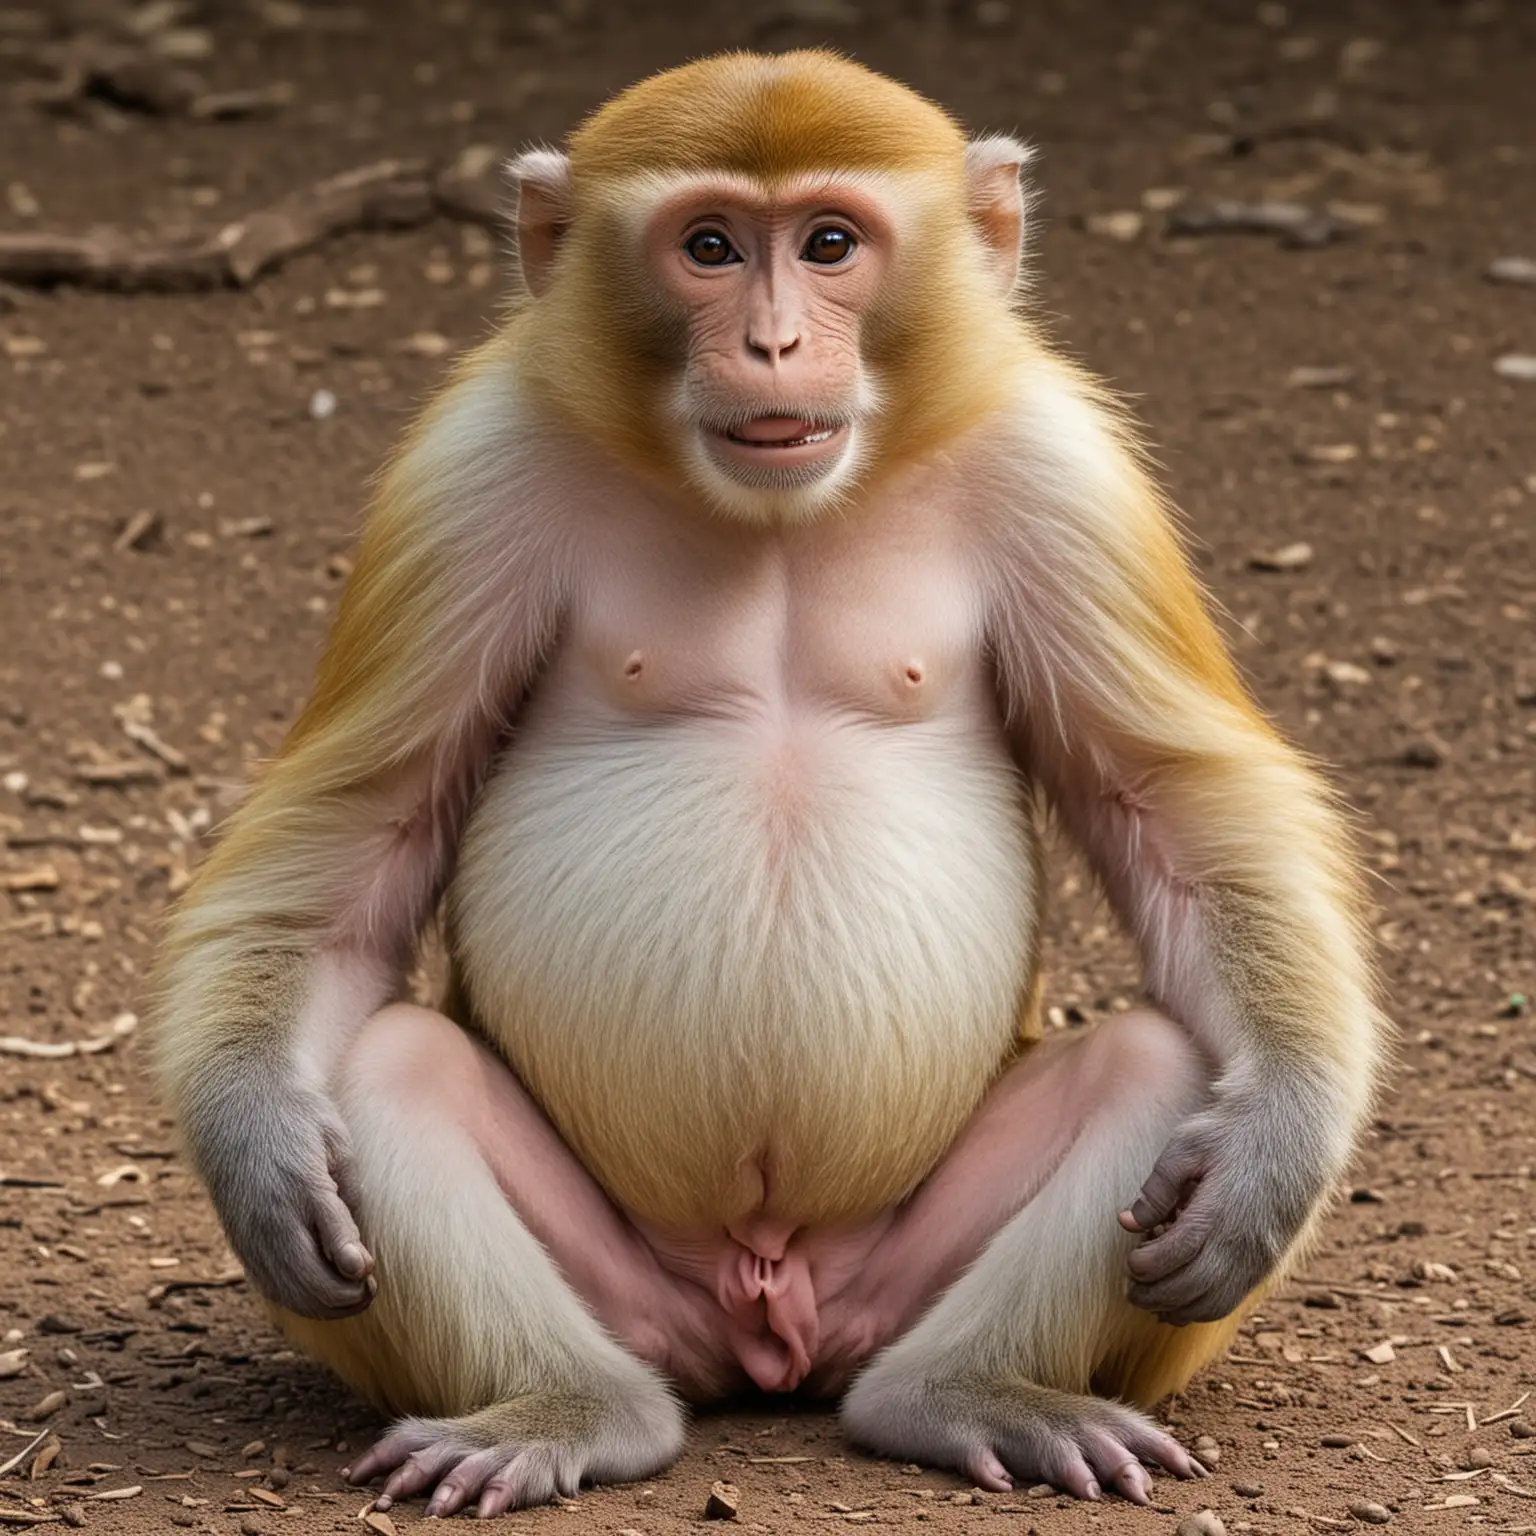 gadająca małpa z olbrzymim brzuchem trzyma się
 za krocze